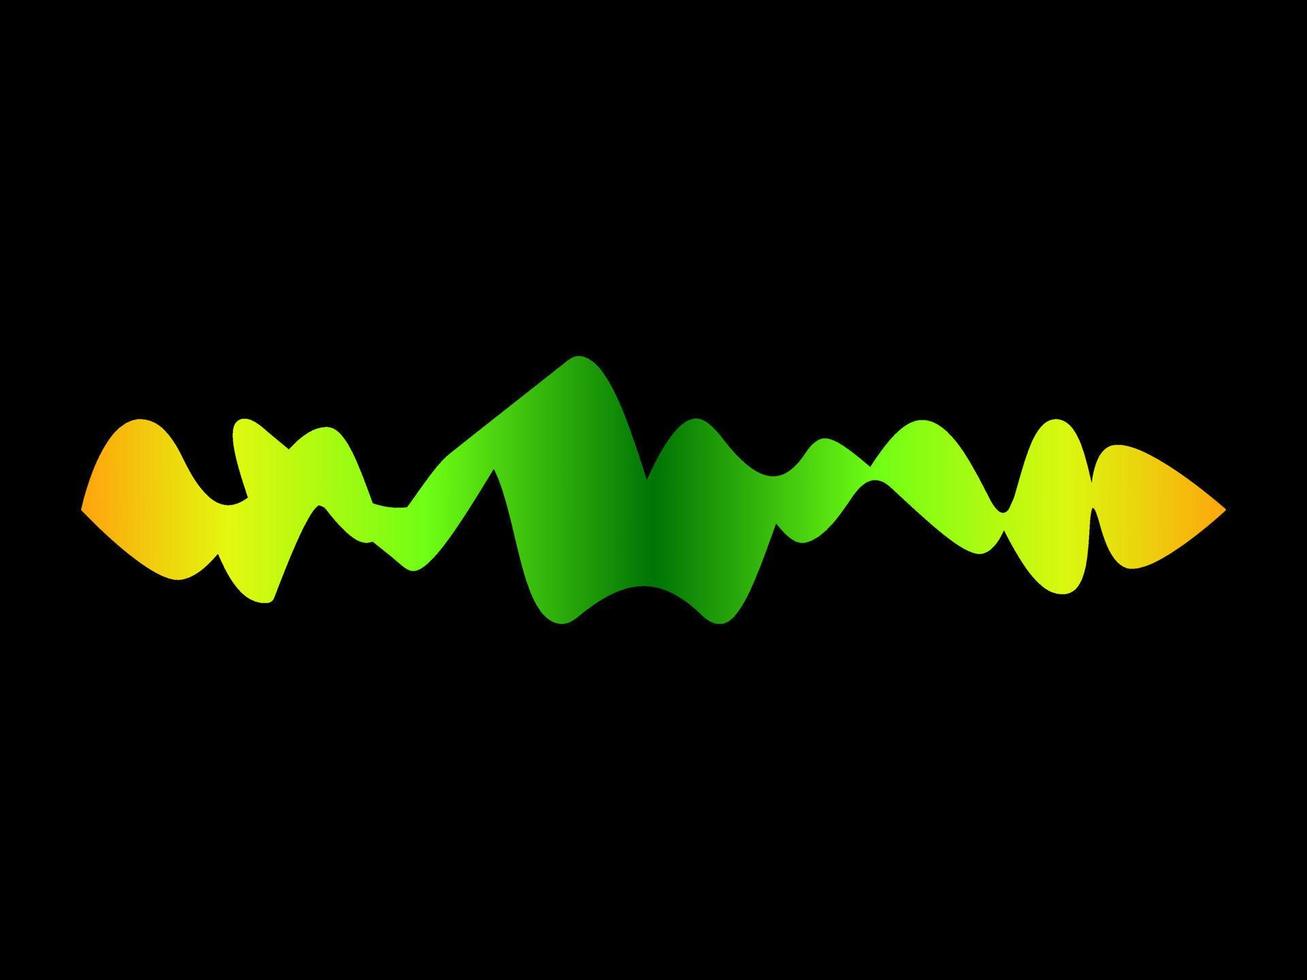 Bewegung mehrfarbige Schallwelle auf schwarzem Hintergrund. abstrakter Hintergrund. Vektor-Illustration vektor